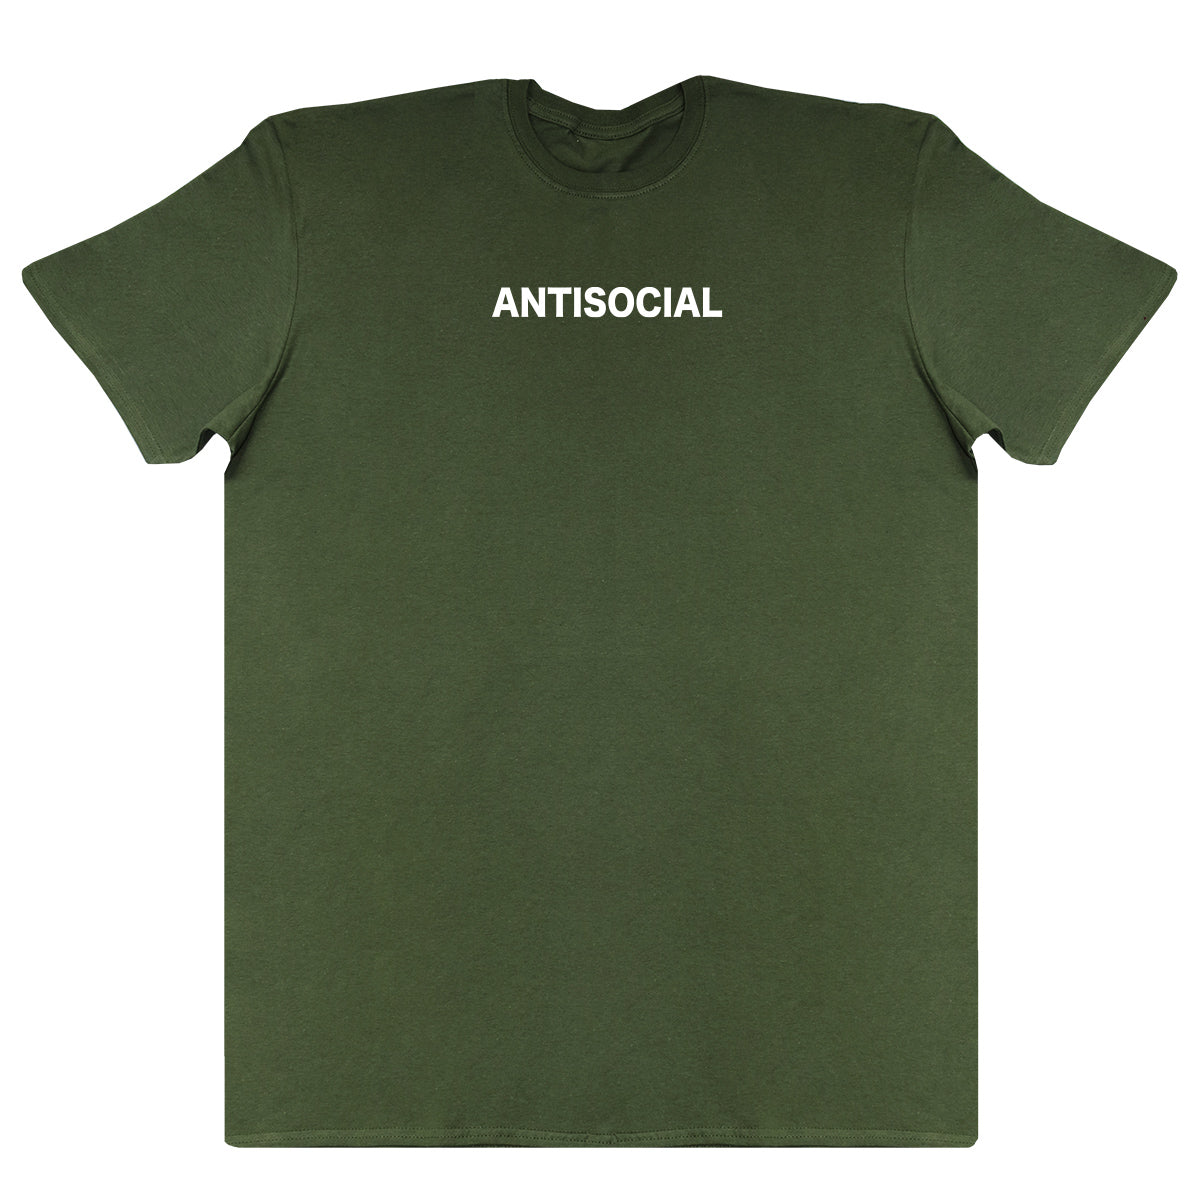 Antisocial - Huge Oversized Comfy Original T-Shirt